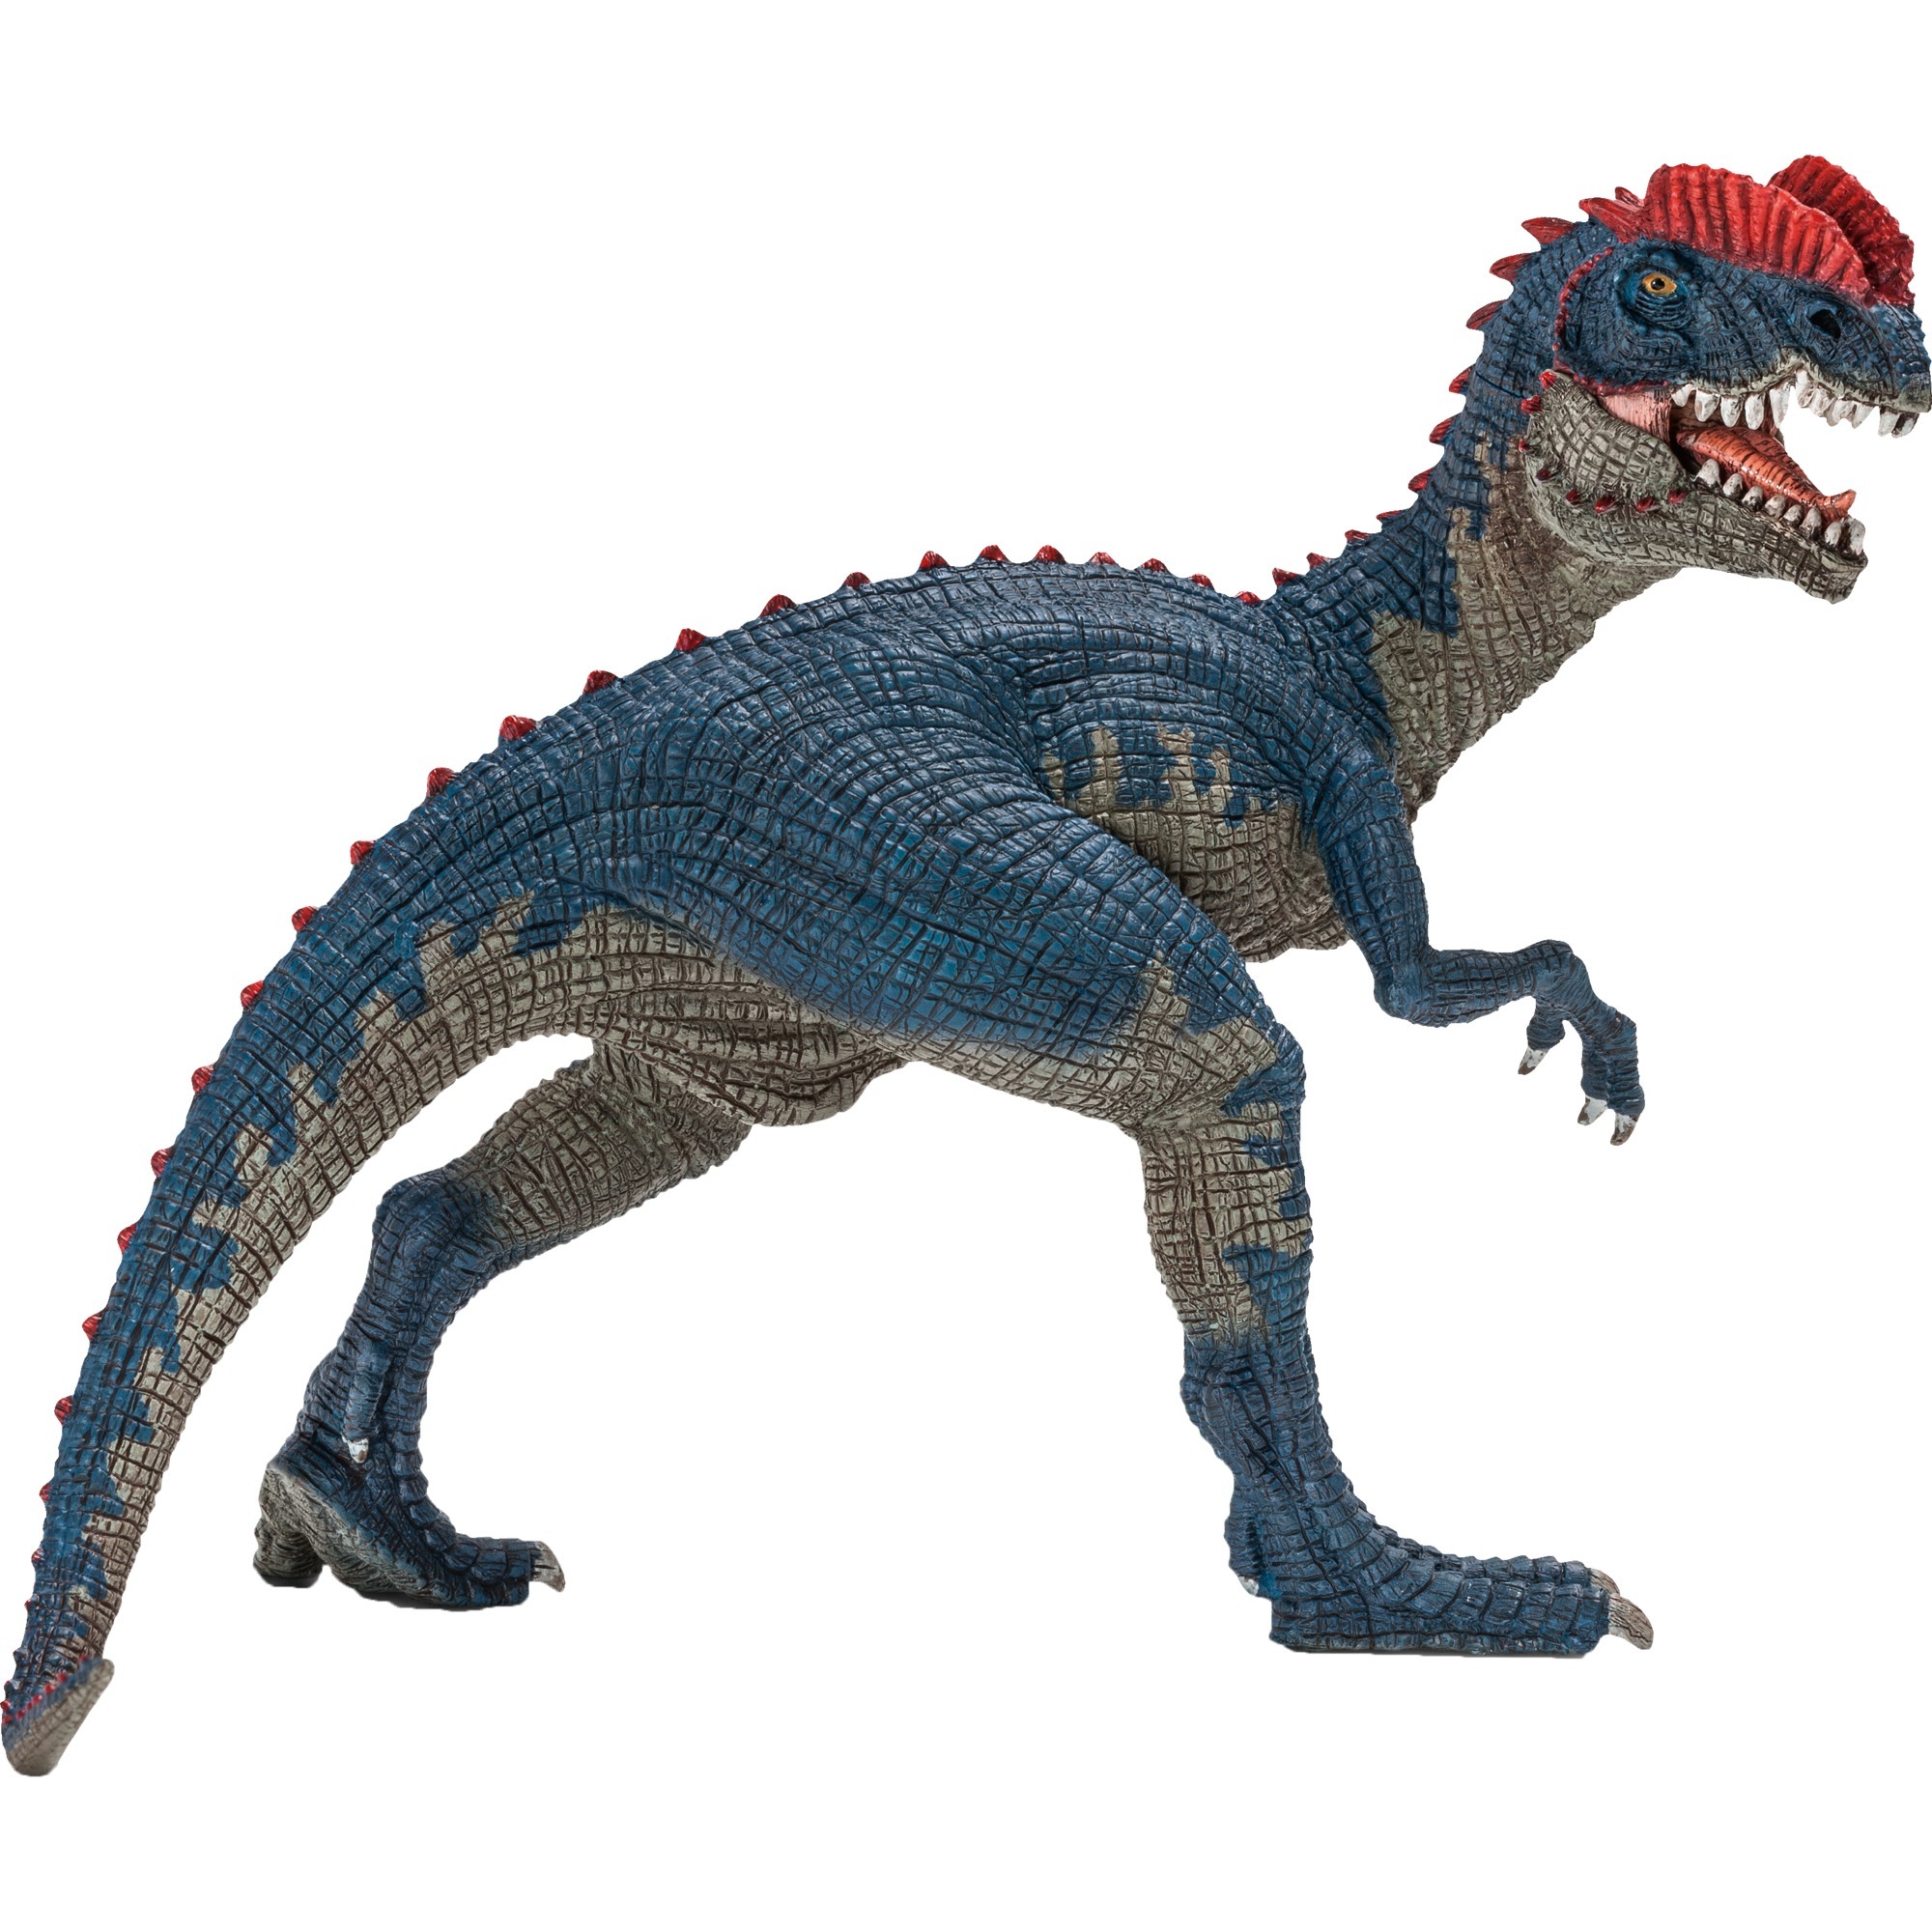 Image of Alternate - Dilophosaurus, Spielfigur online einkaufen bei Alternate